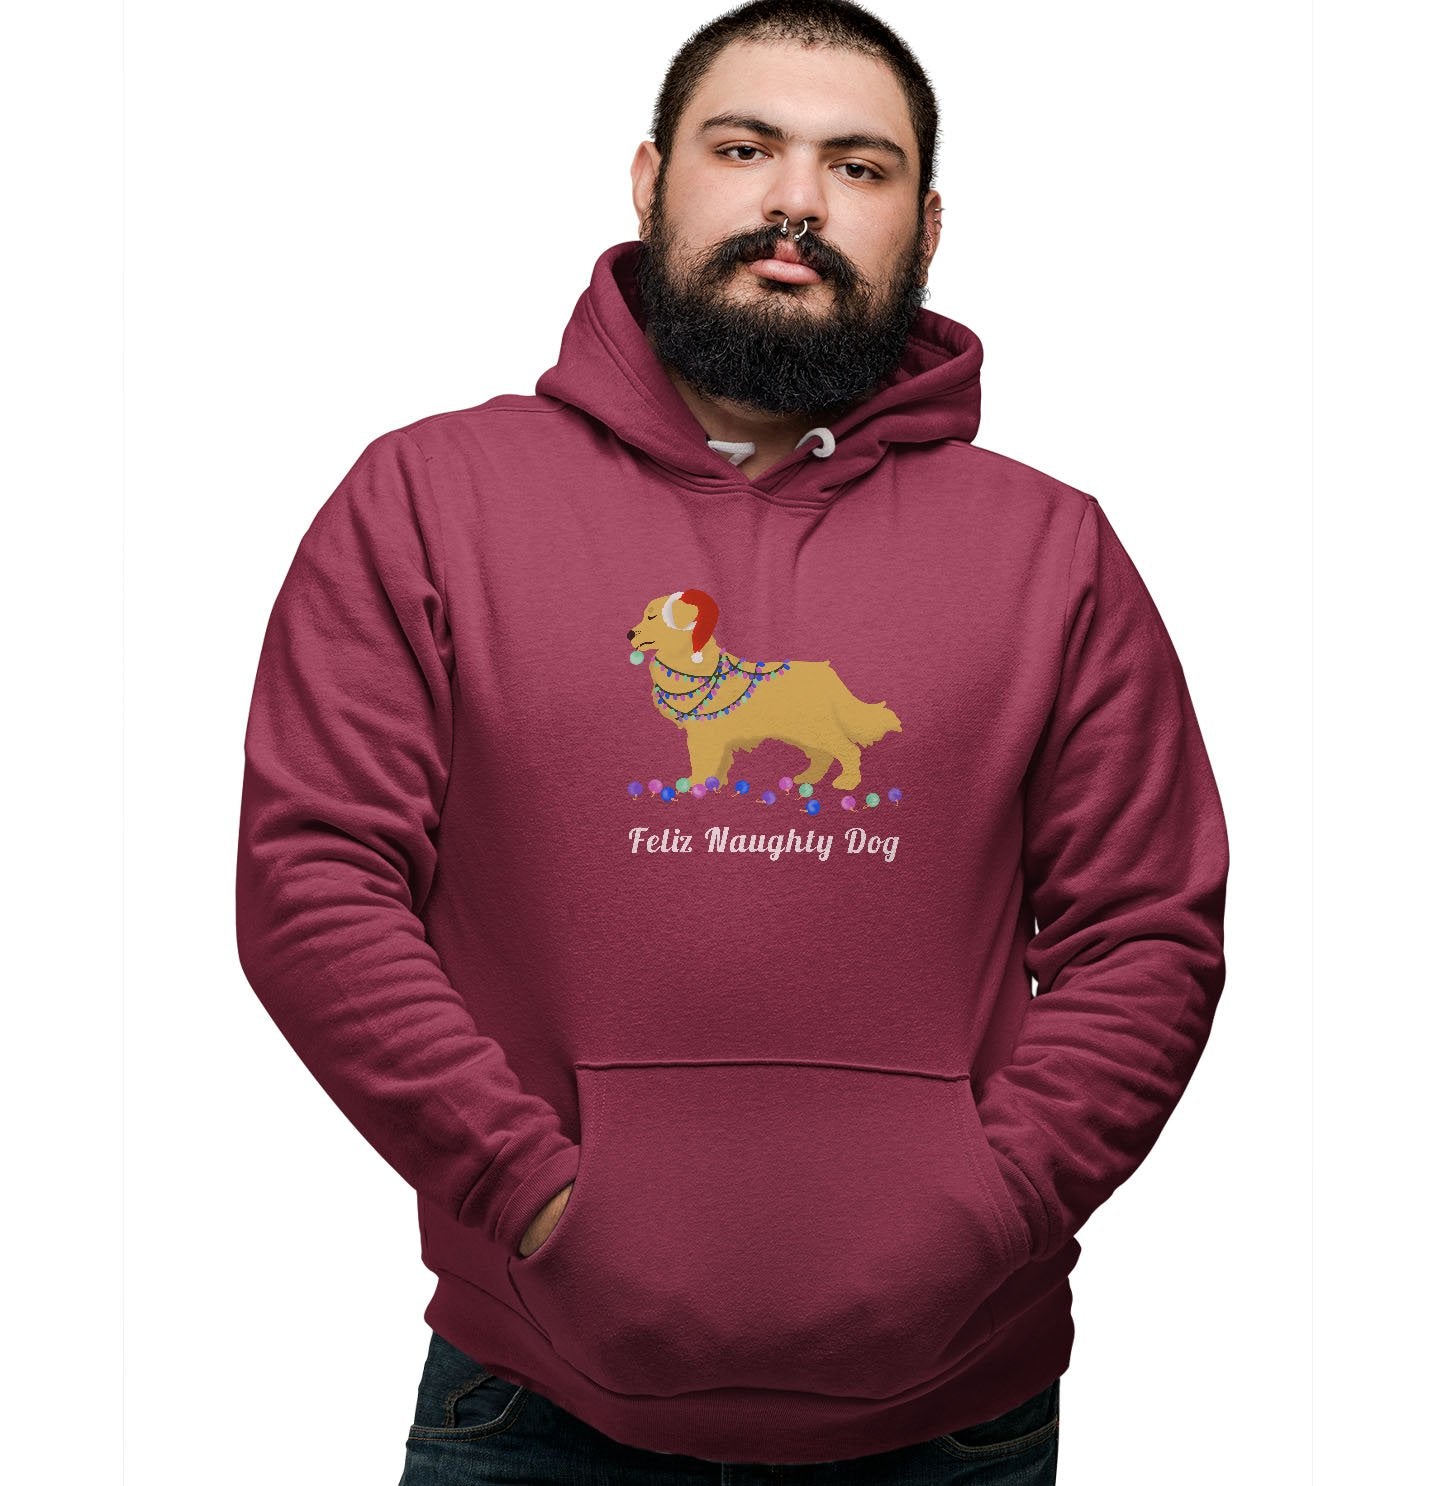 Feliz Naughty Dog Golden Retriever - Adult Unisex Hoodie Sweatshirt